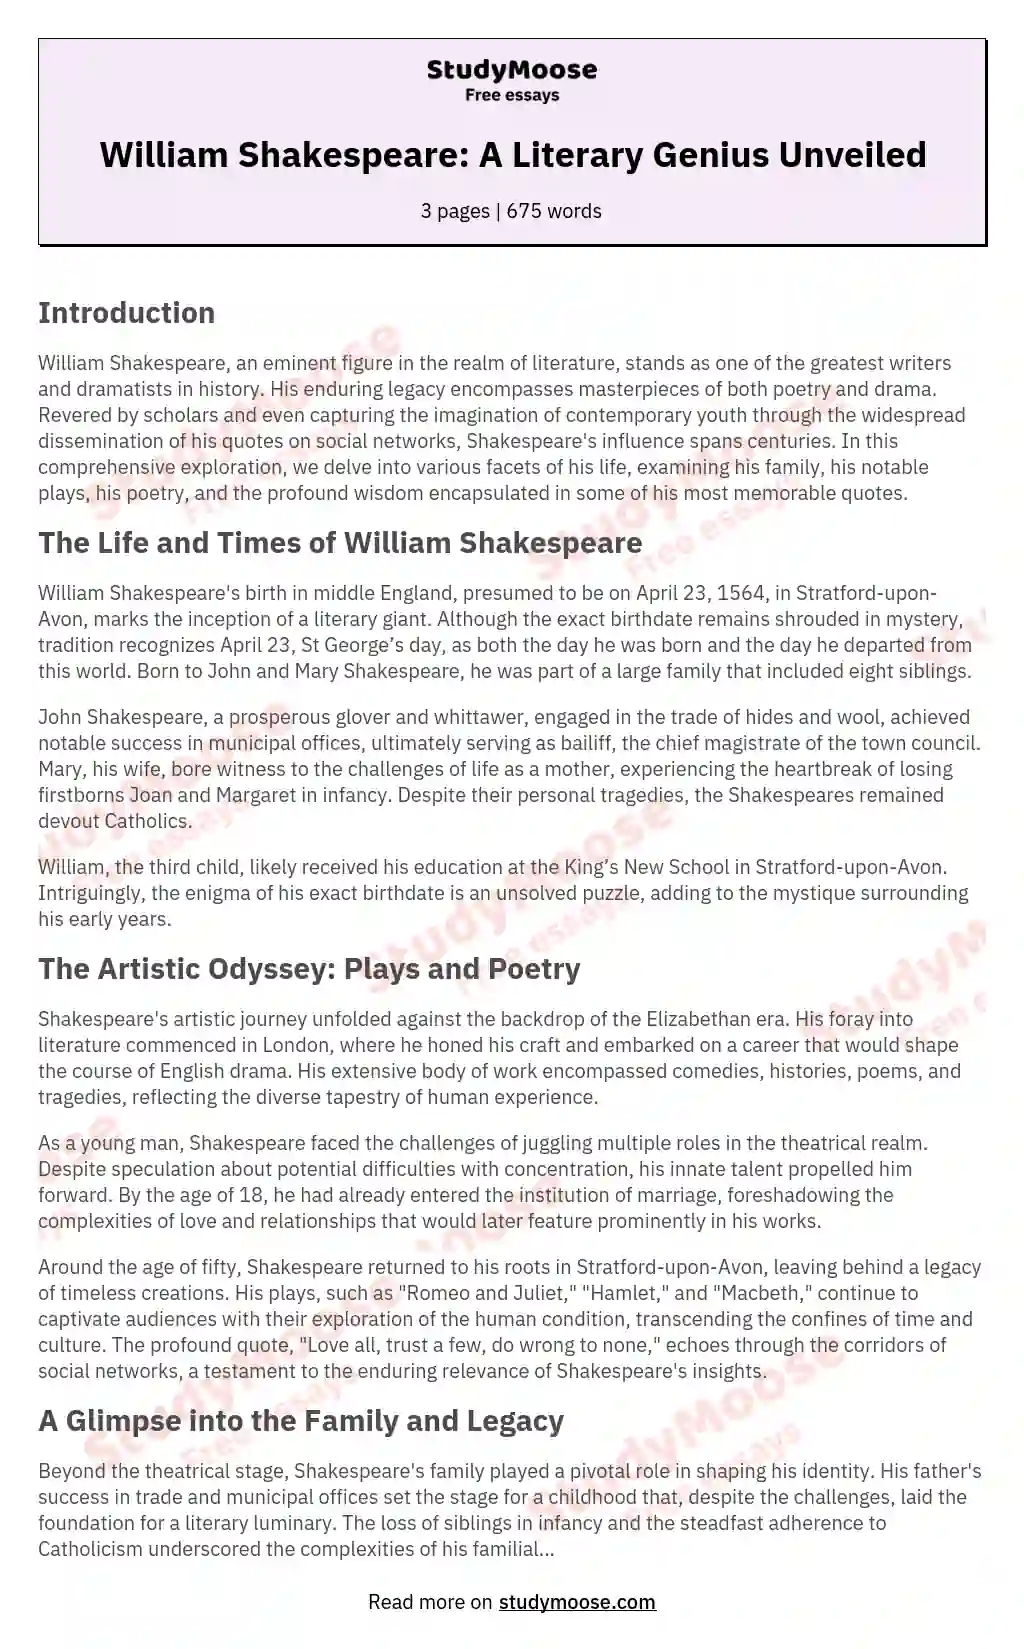 William Shakespeare: A Literary Genius Unveiled essay